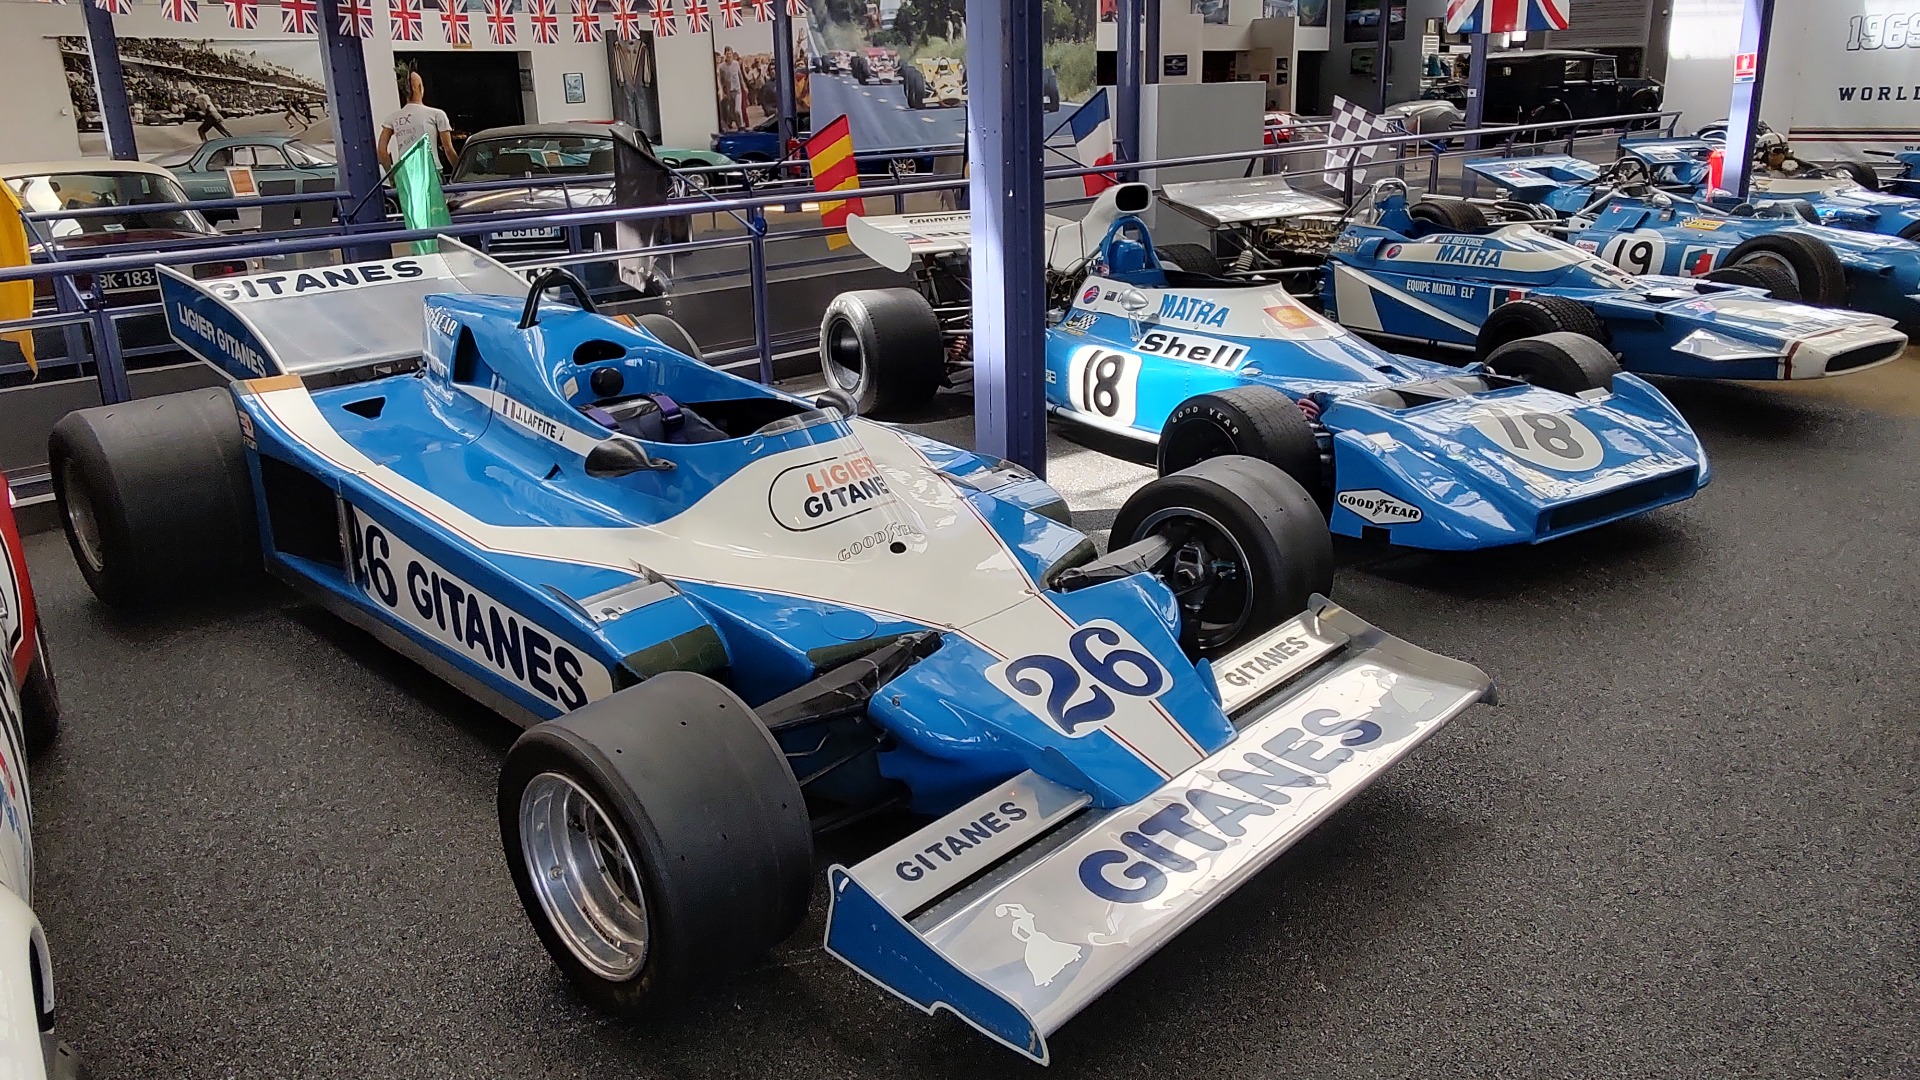 Jacques Laffite vant Sverige GP i Formel 1 i 1977 med denne Ligier JS7 med Matra V12.